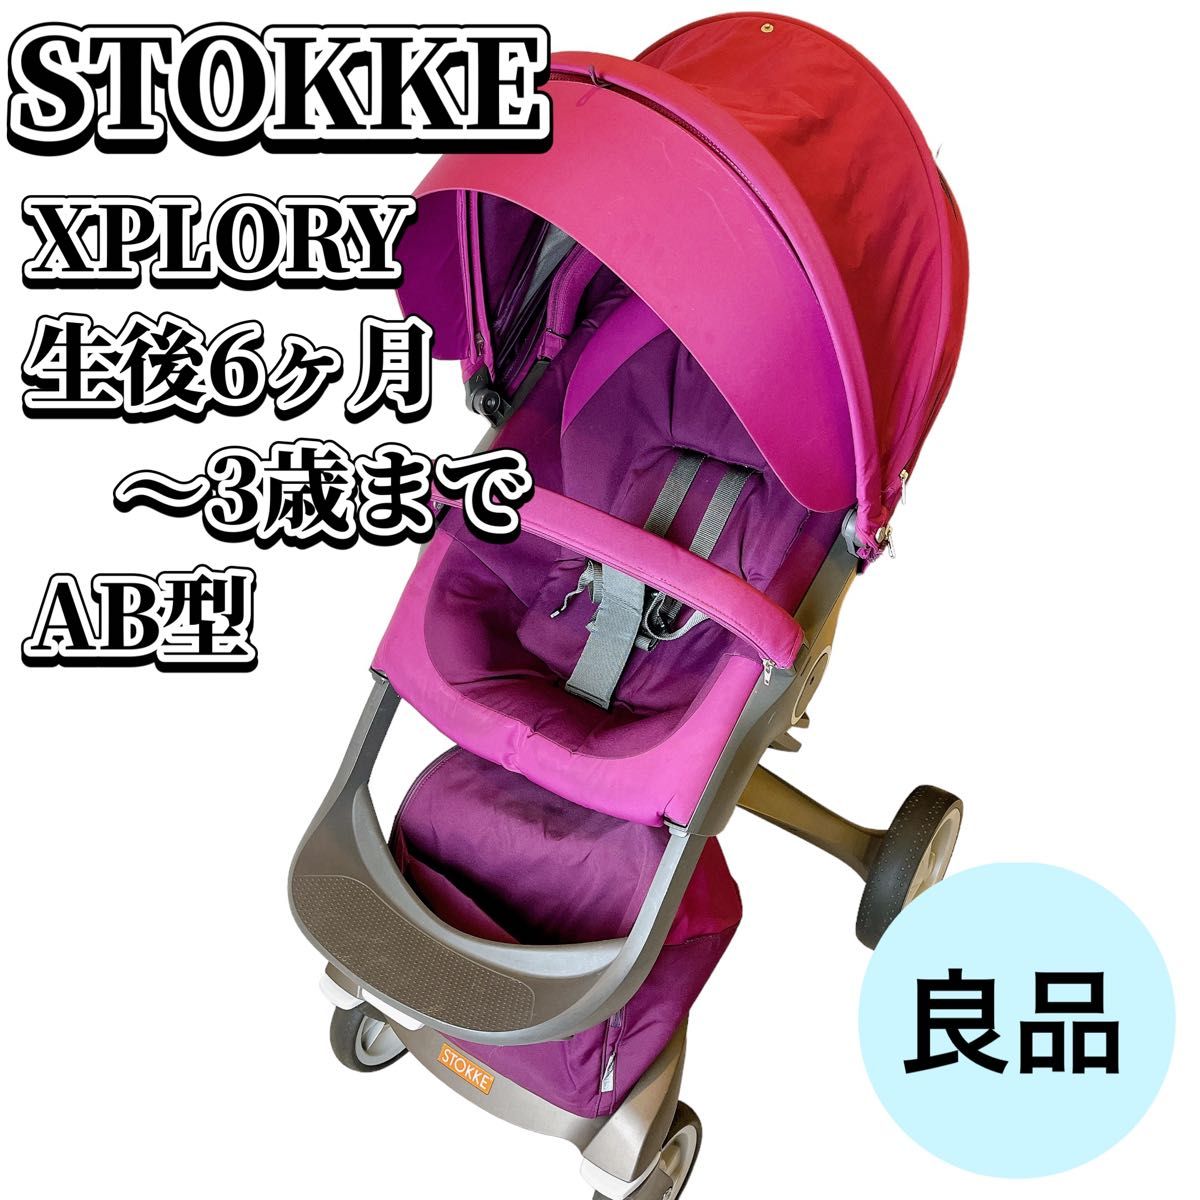 【良品】 ストッケ エクスプローリー XPLORY  AB型 4輪 ベビーカー